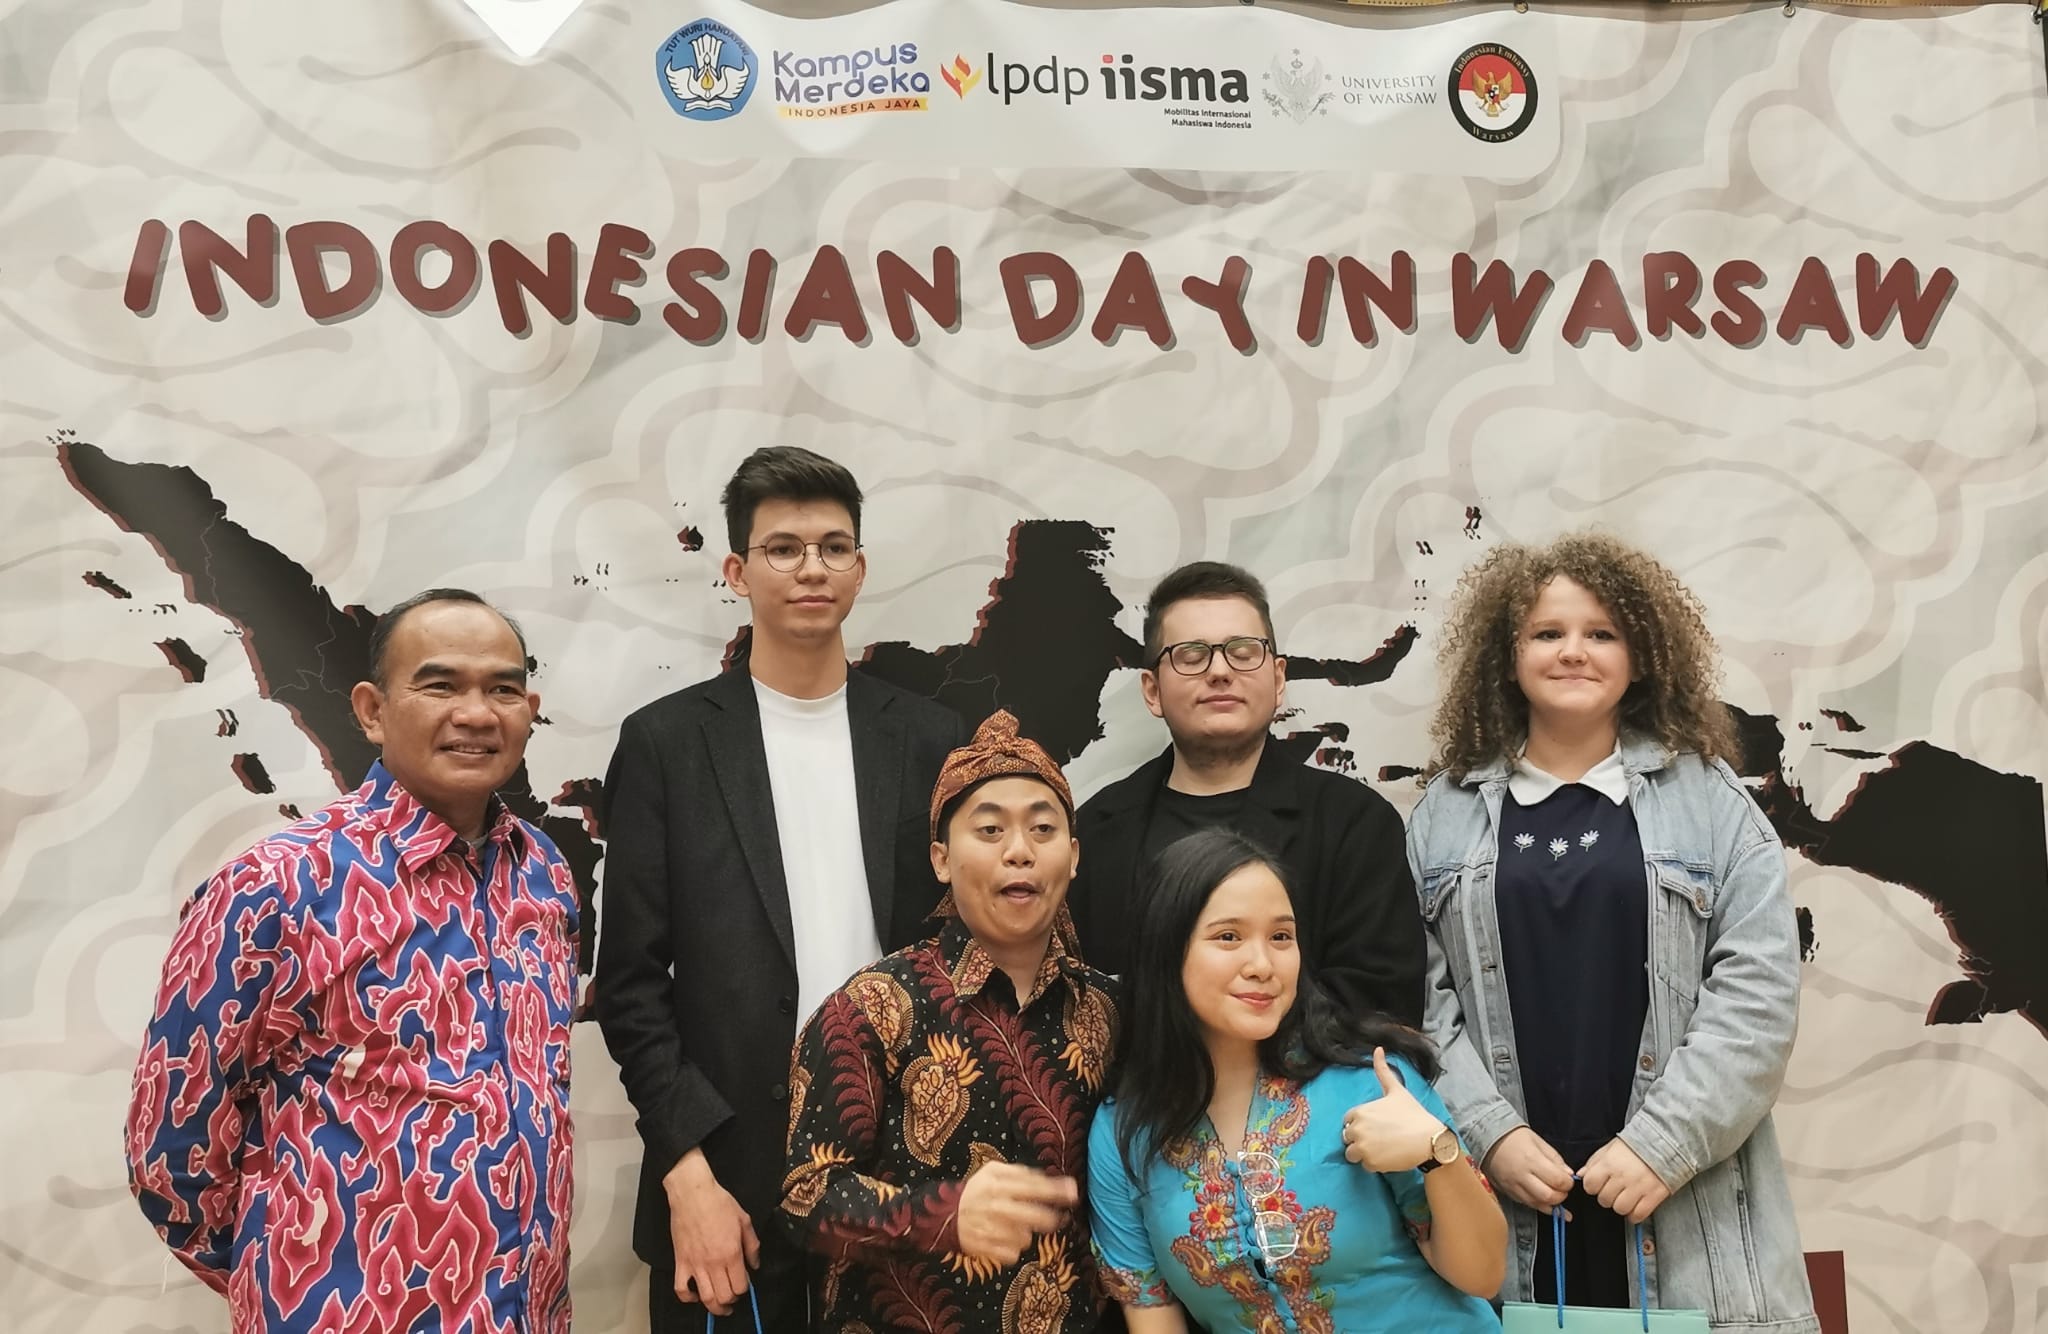 Foto : KUAI RI Taufiq Lamsuhur Berpose Bersama Pengunjung Pertunjukan dan MC Acara "Indonesian Day in Warsawa"